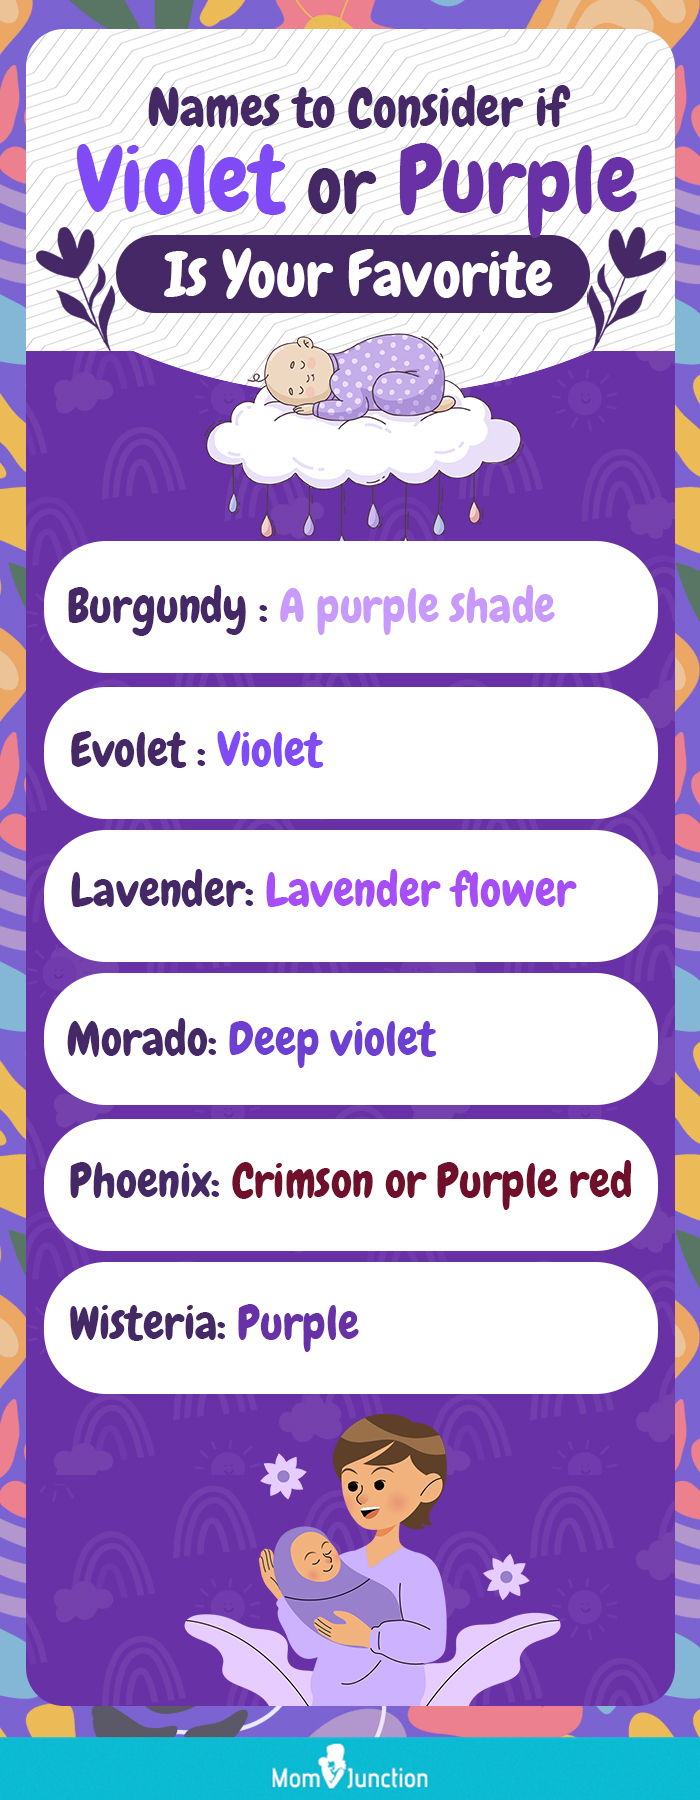 婴儿名字意味着紫色(图)